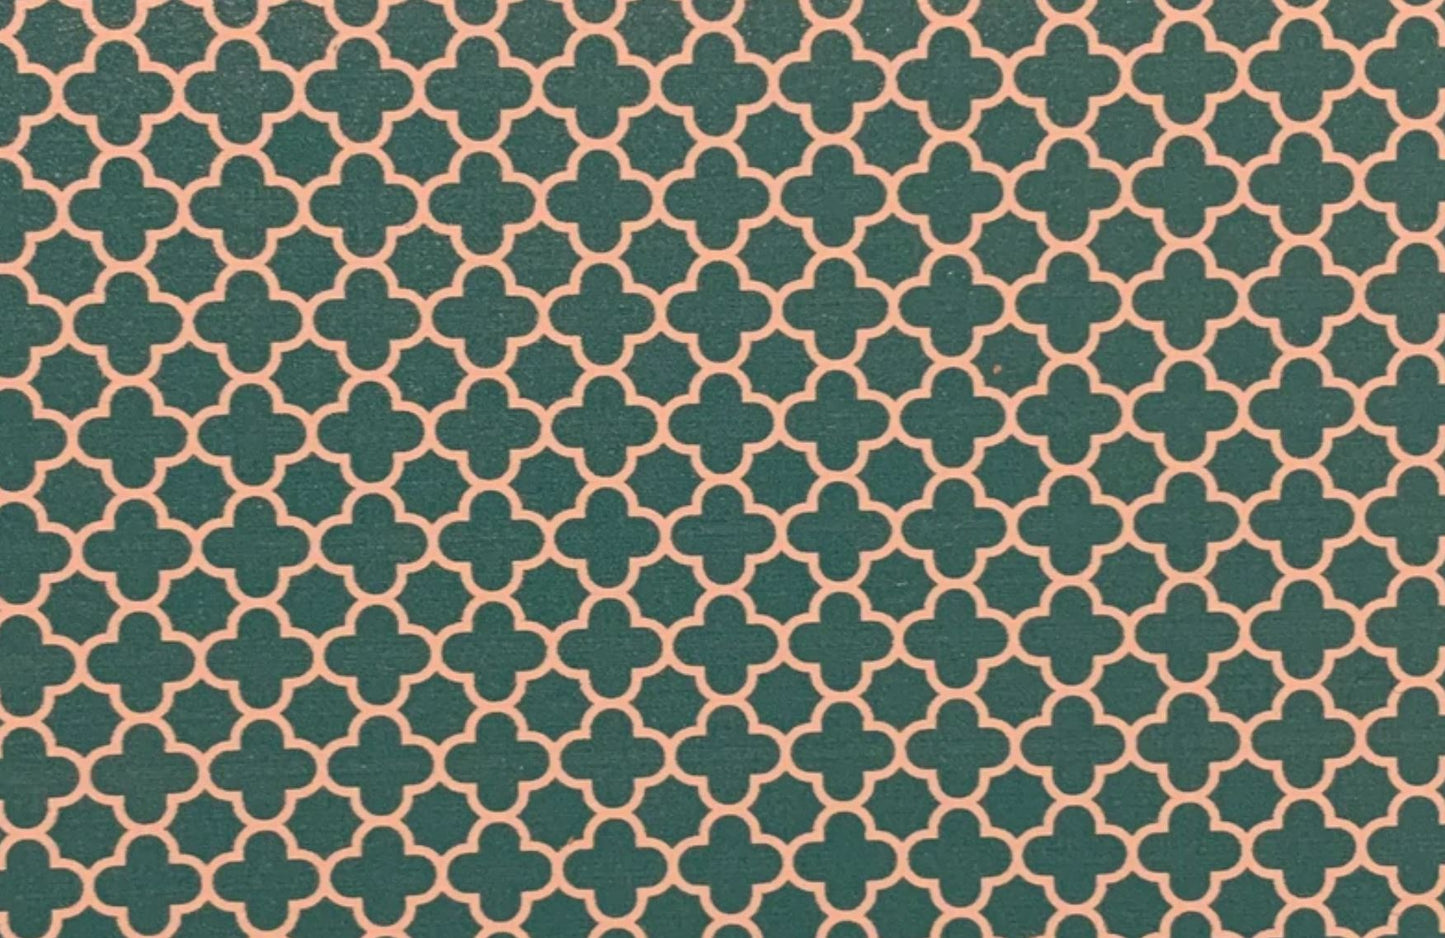 Teal Quatrefoil- Printed Pattern Designs (Sets)